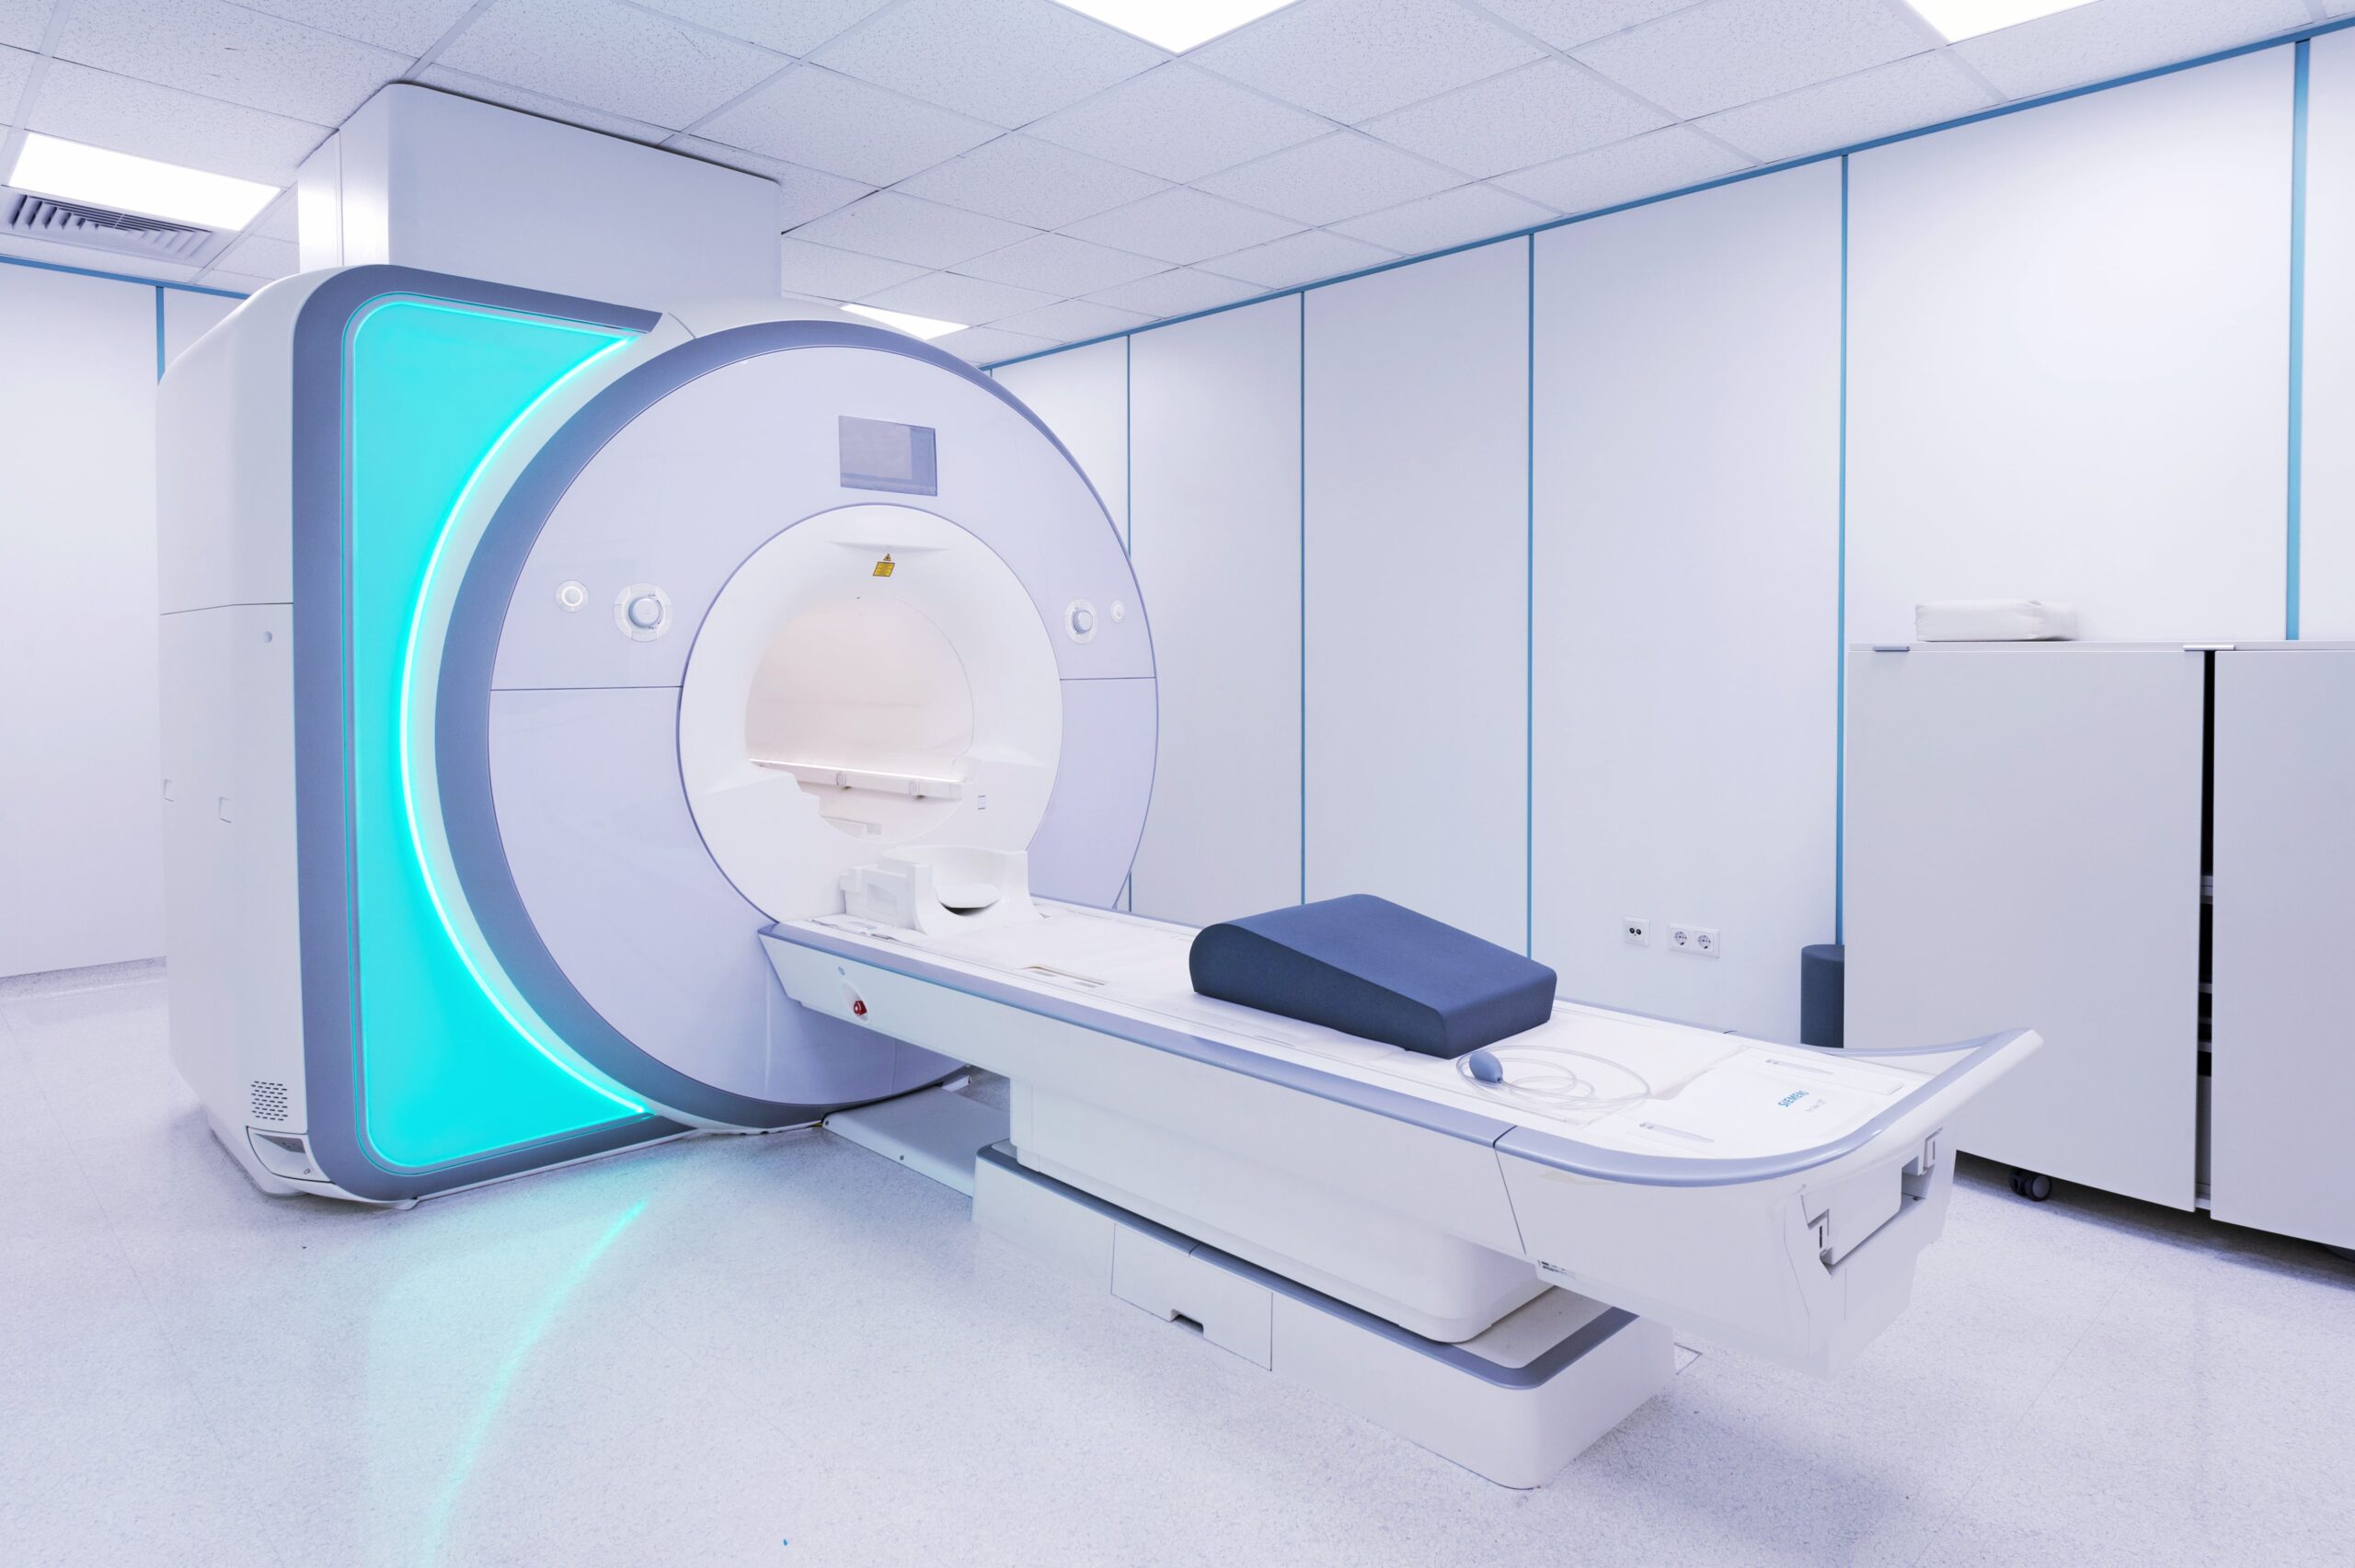 MRI machine.